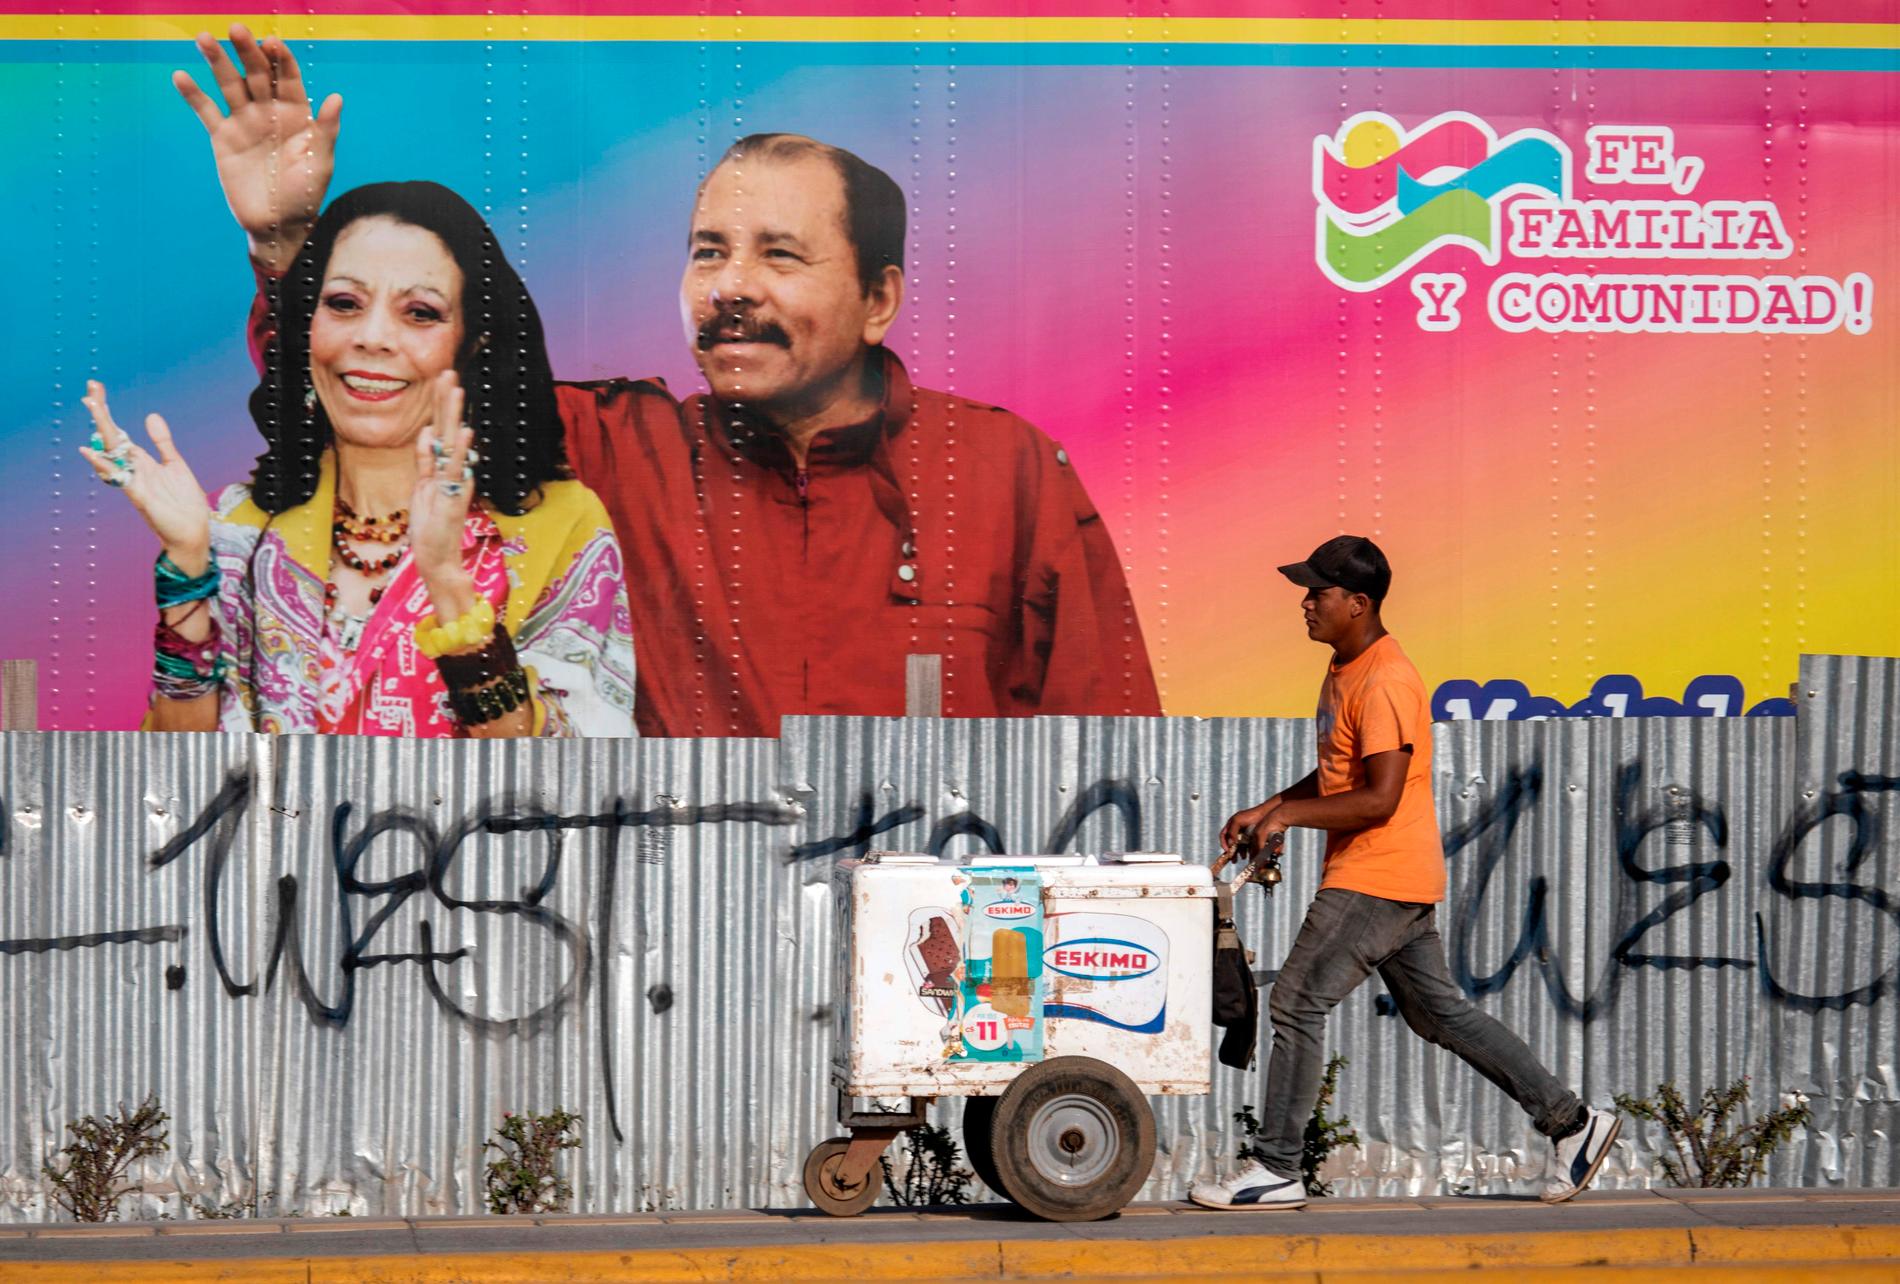 En glassförsäljare går förbi en mobil vårdinrättning med ett portträtt av Nicaraguas president Daniel Ortega och hans fru, vicepresident Rosario Murillo.